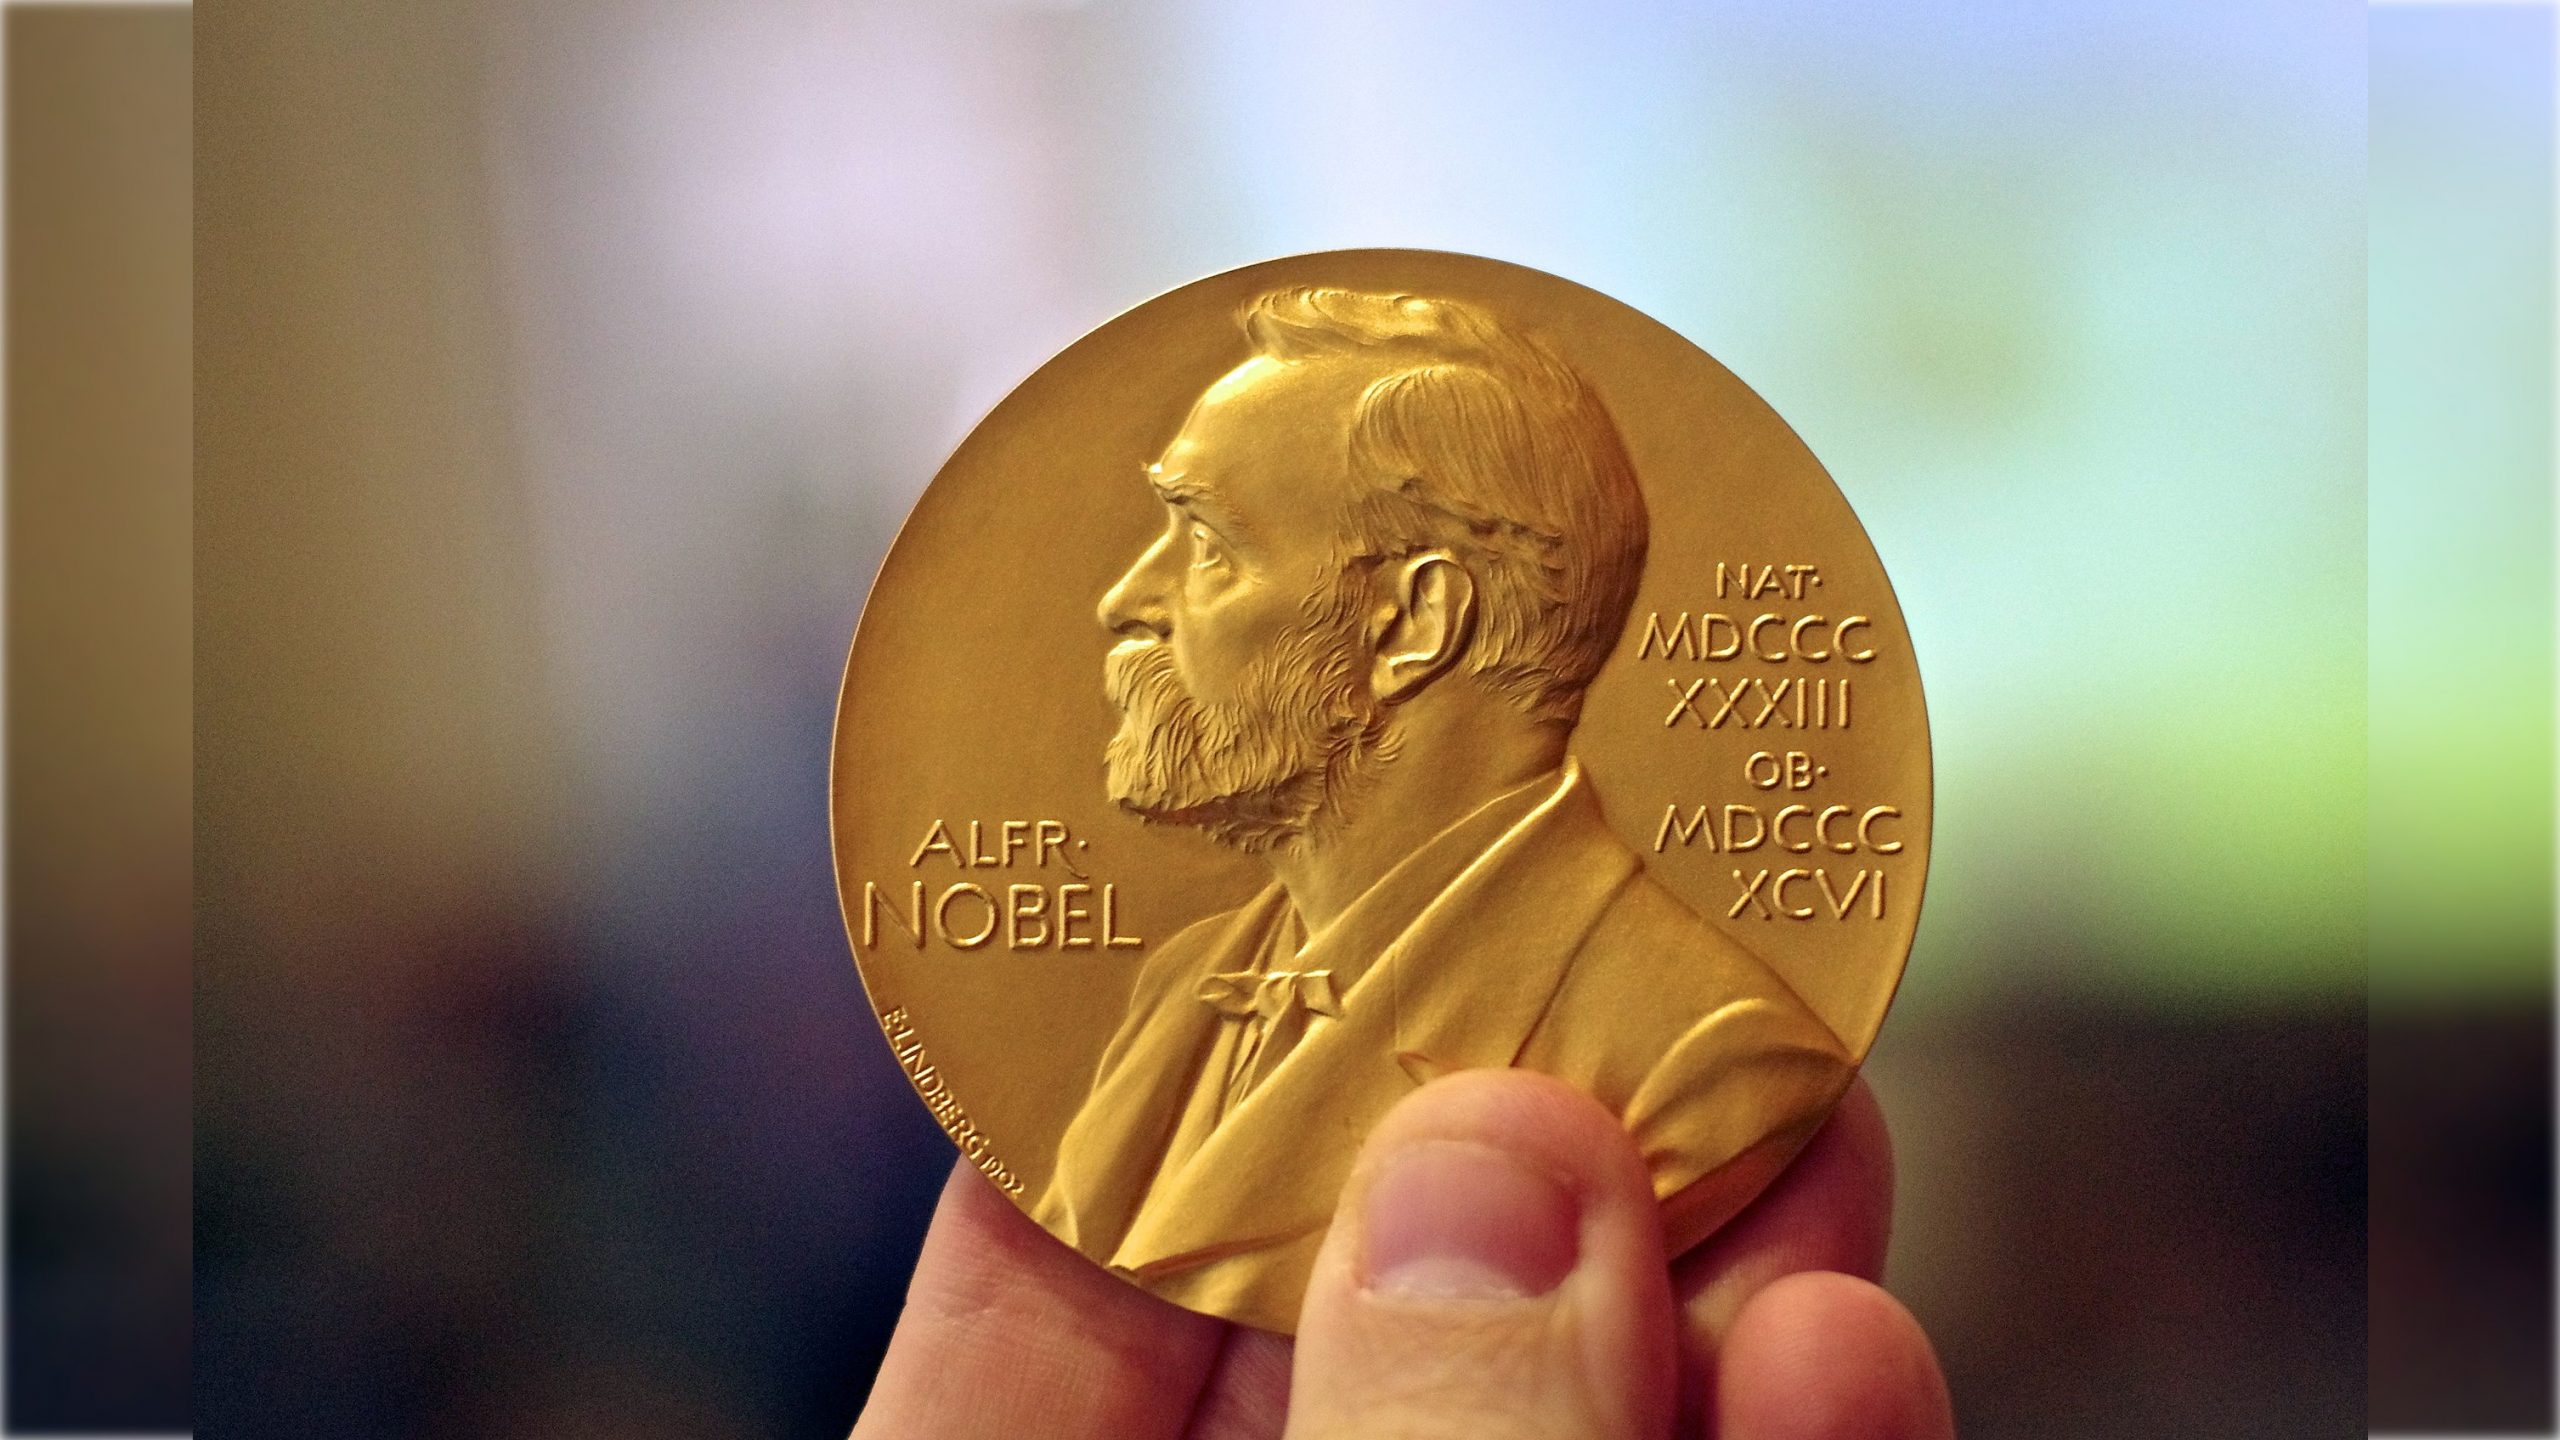 Nobel_Prize_Medal_in_Chemistry_16x9